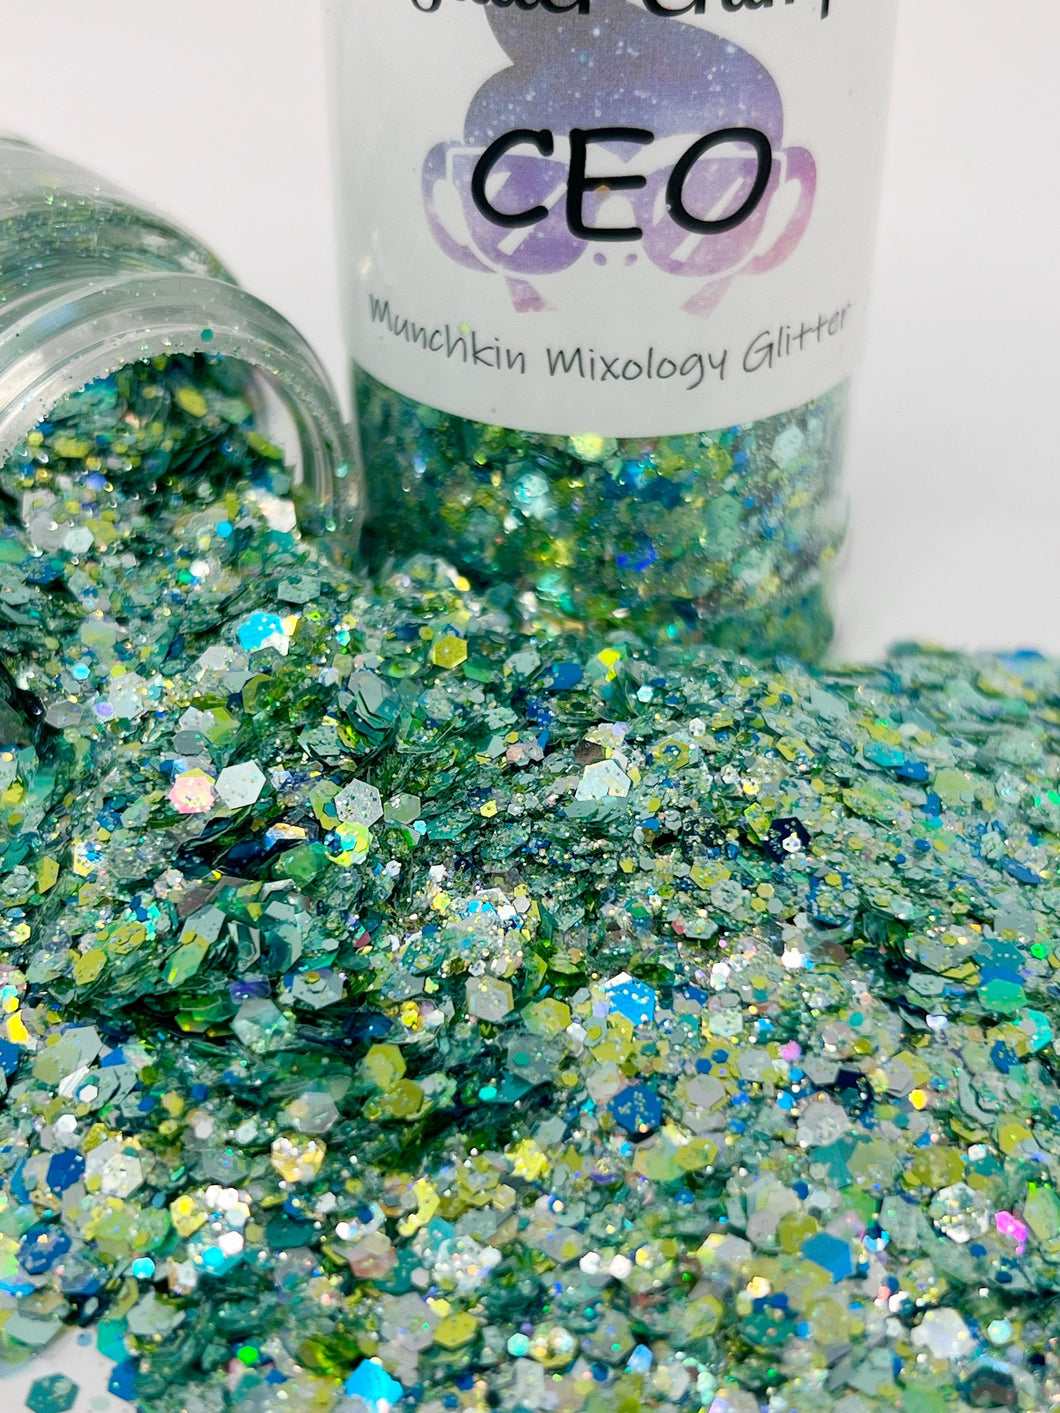 CEO - Munchkin Mixology Glitter